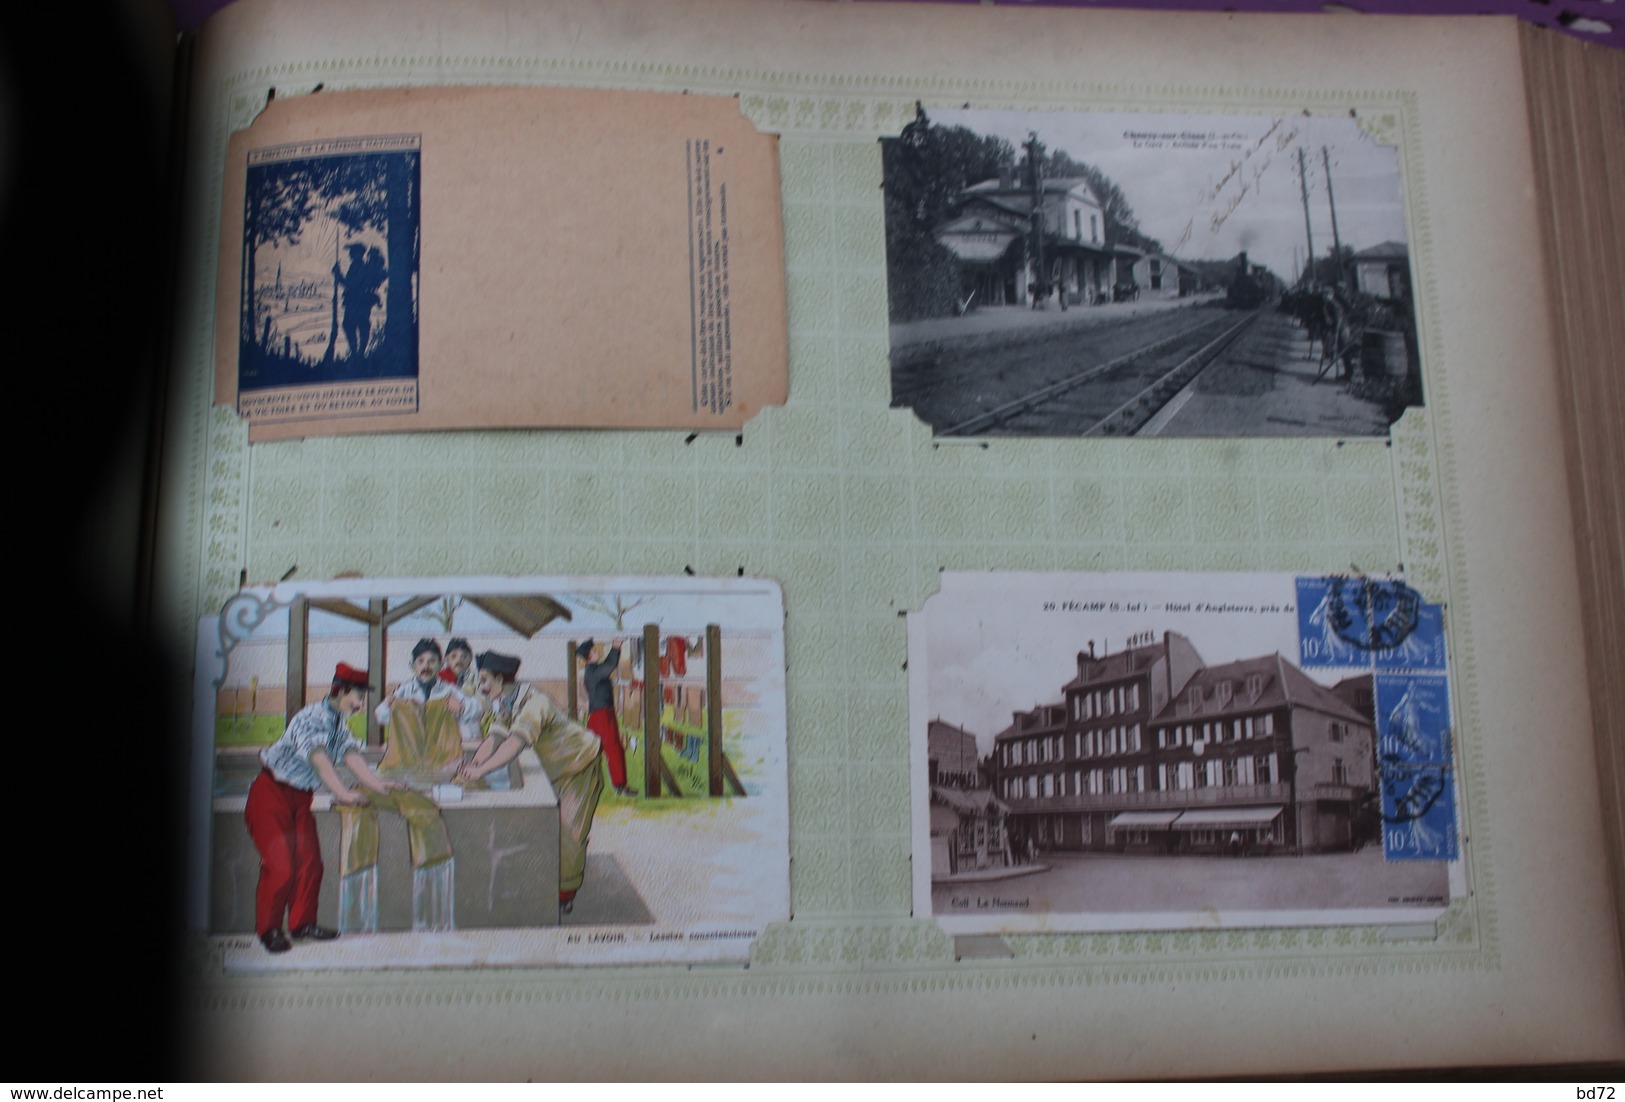 bel album de 325 cartes postales anciennes